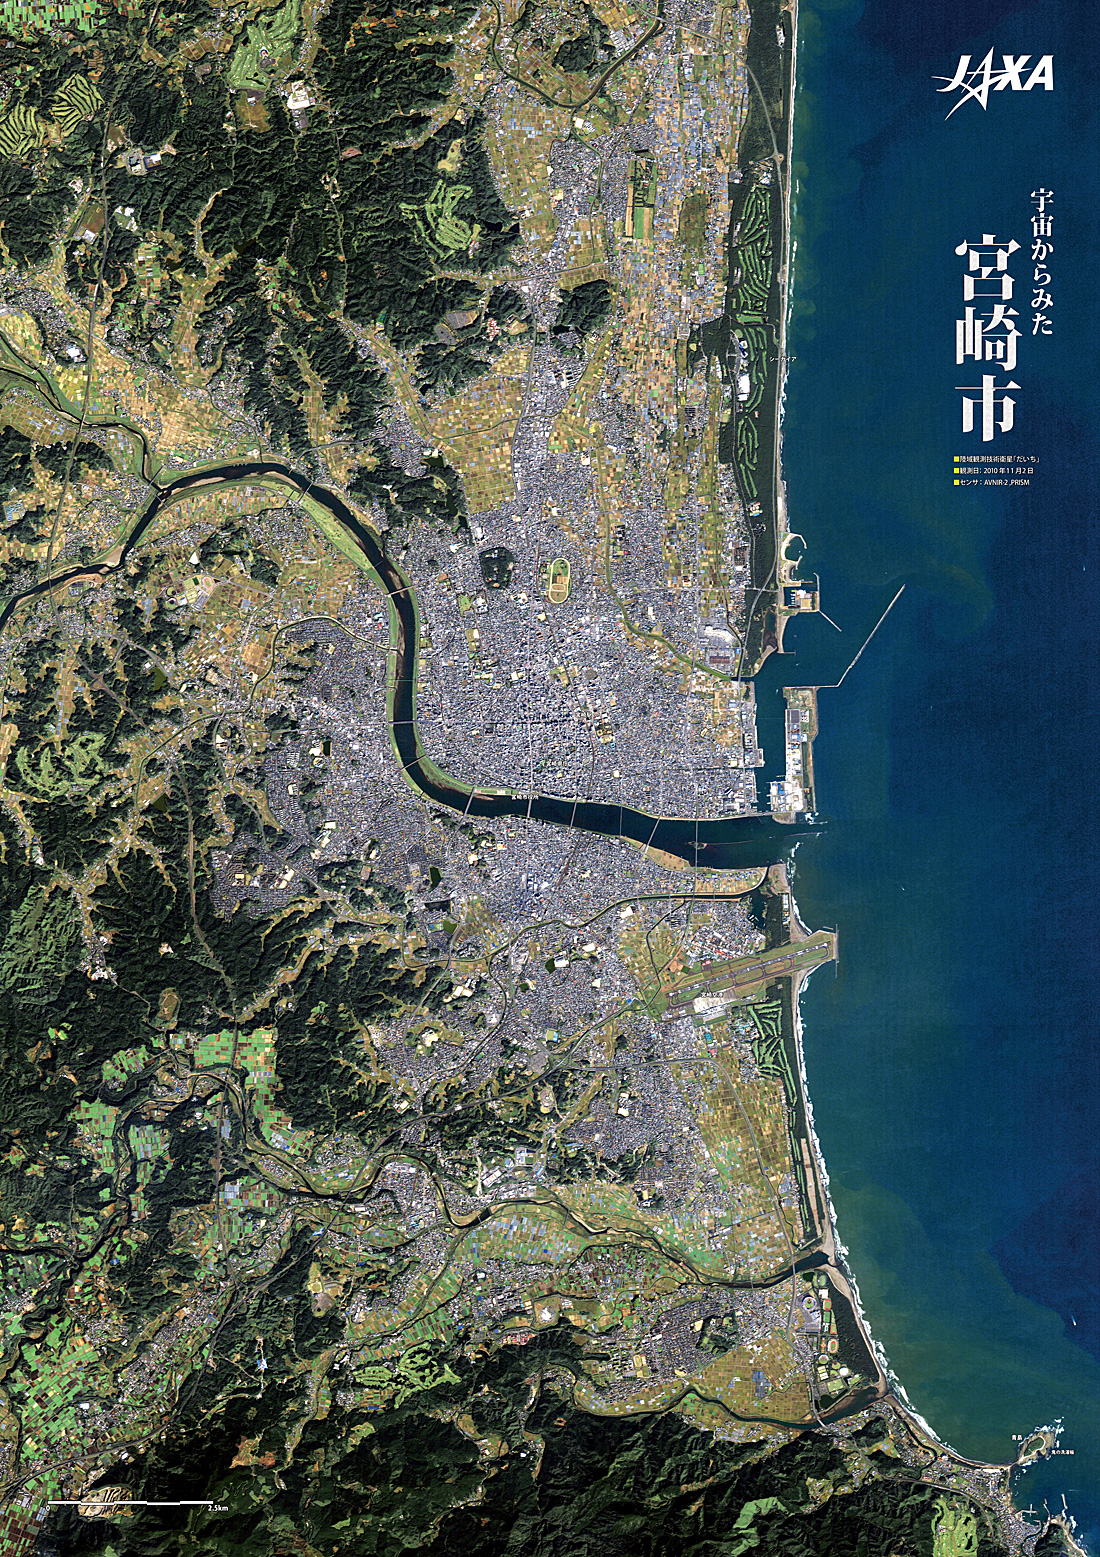 だいちから見た日本の都市 宮崎市:衛星画像（ポスター仕上げ）